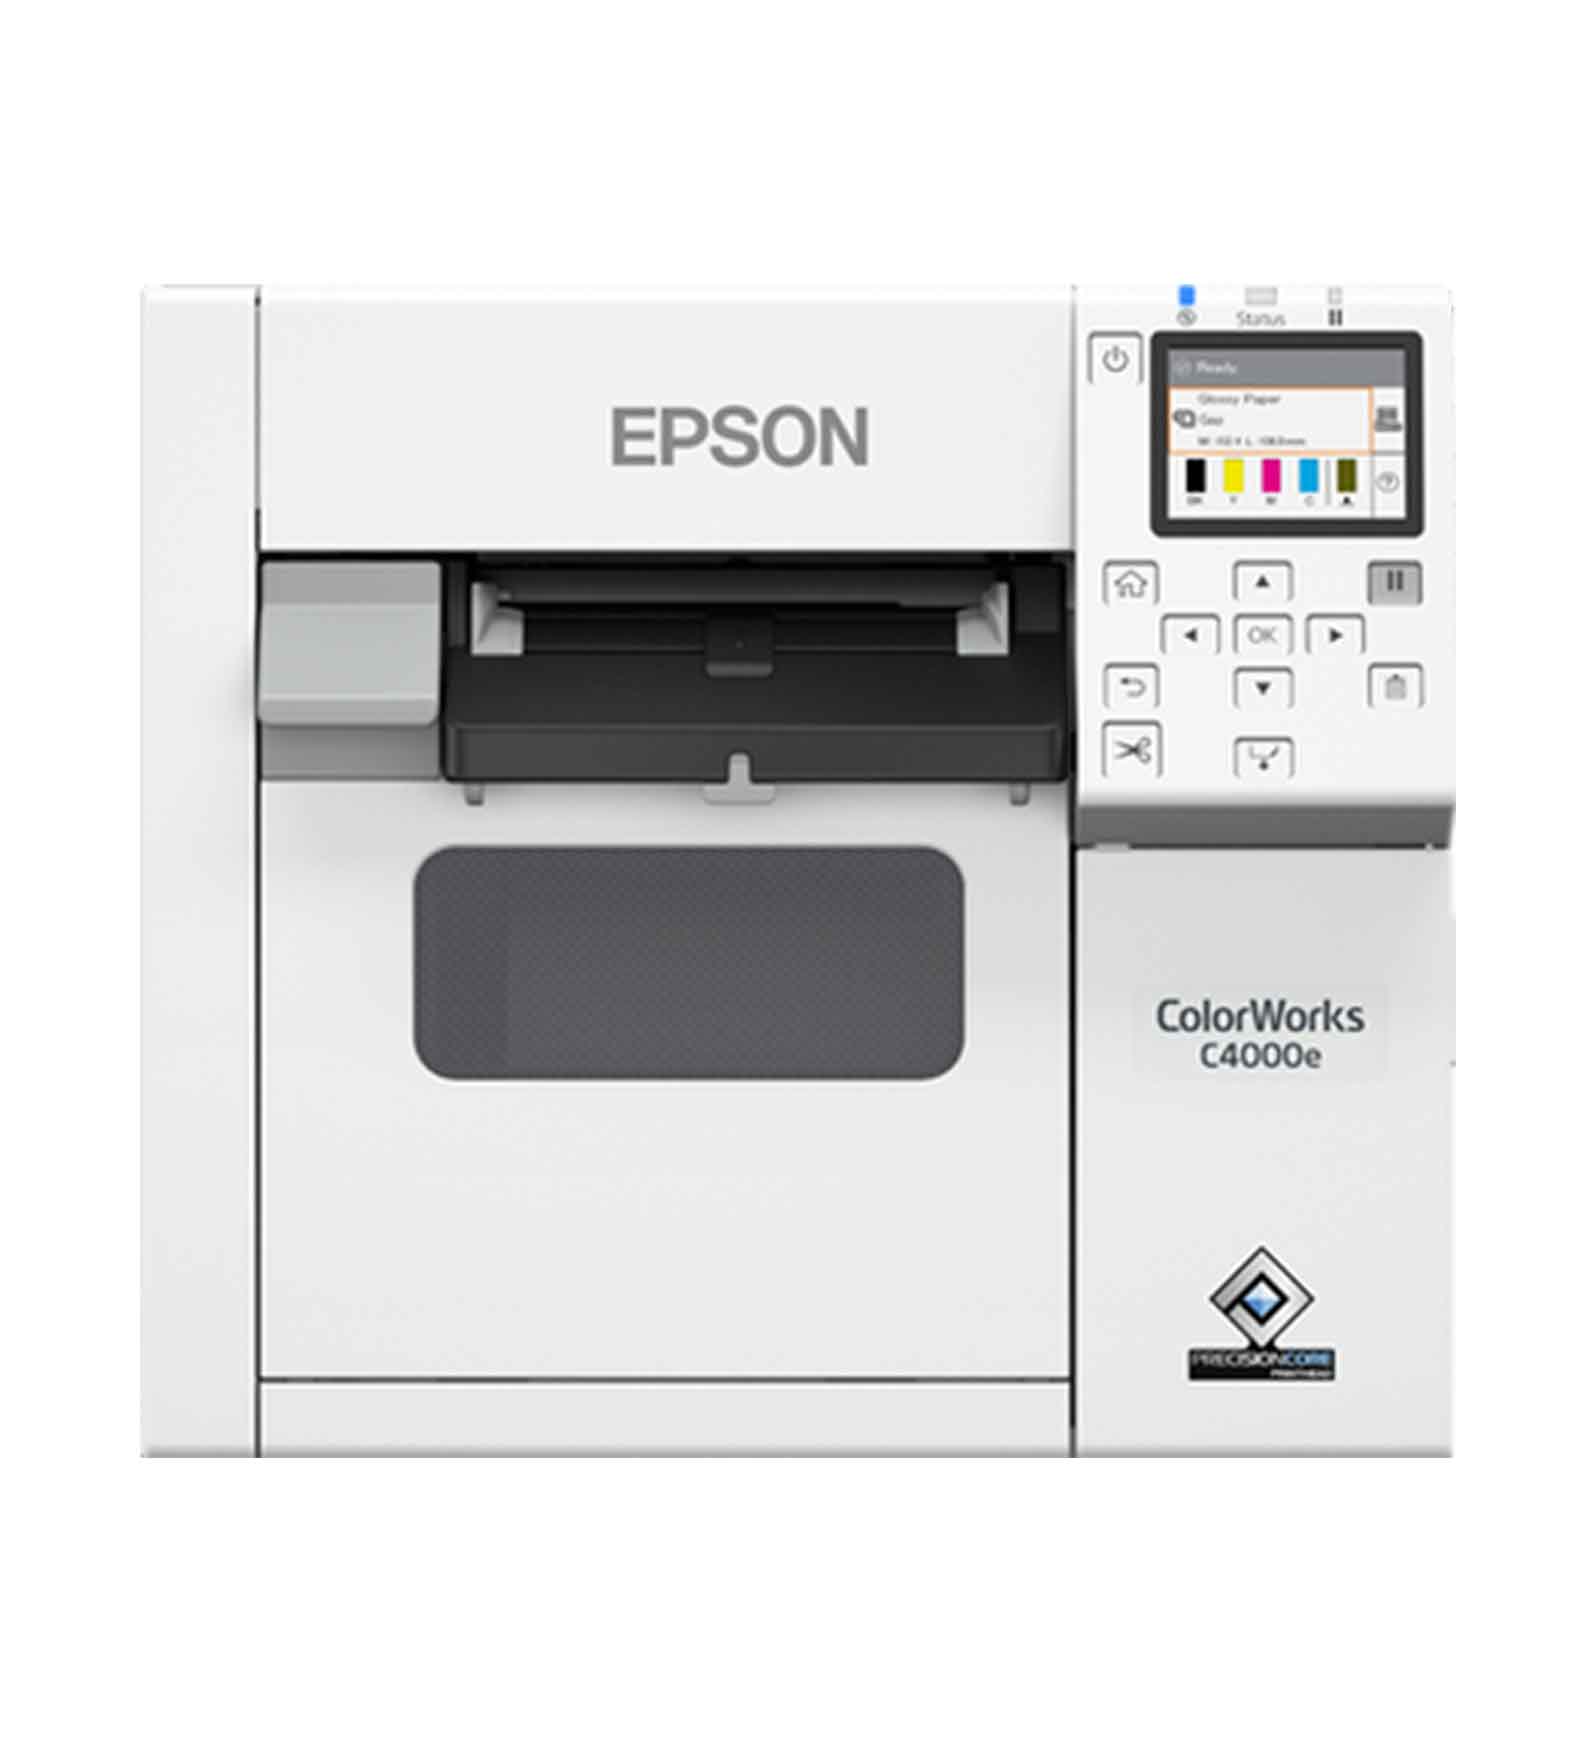 Epson ColorWorks C4000e Series Spausdintuvas